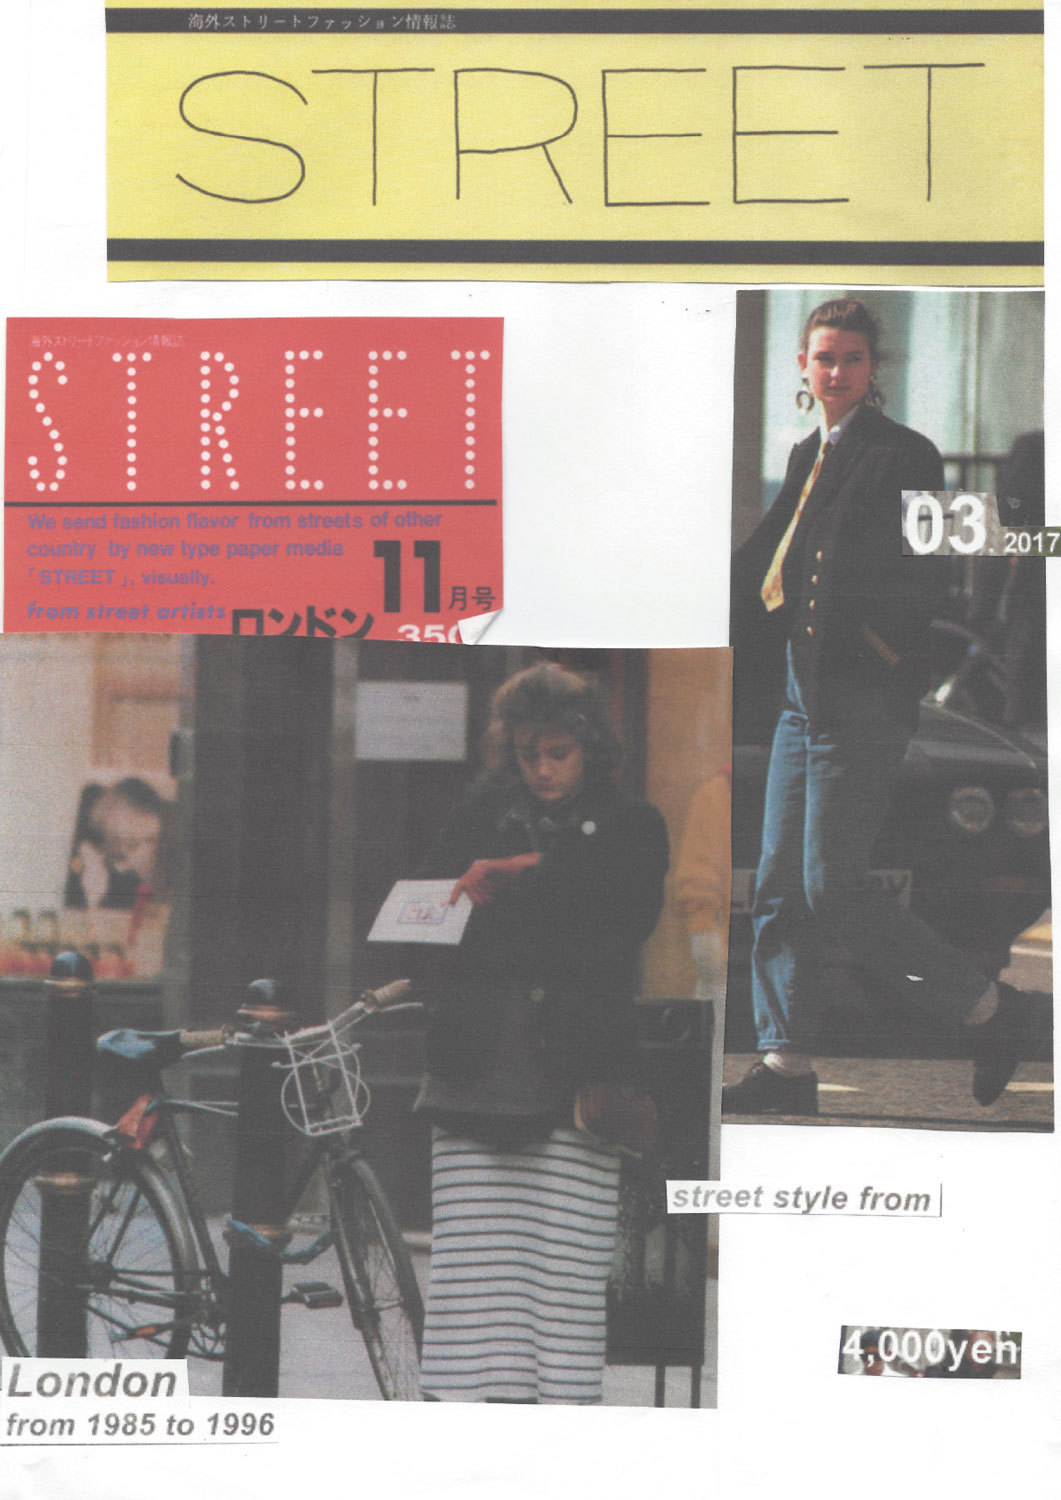 STREET London 1985-1996